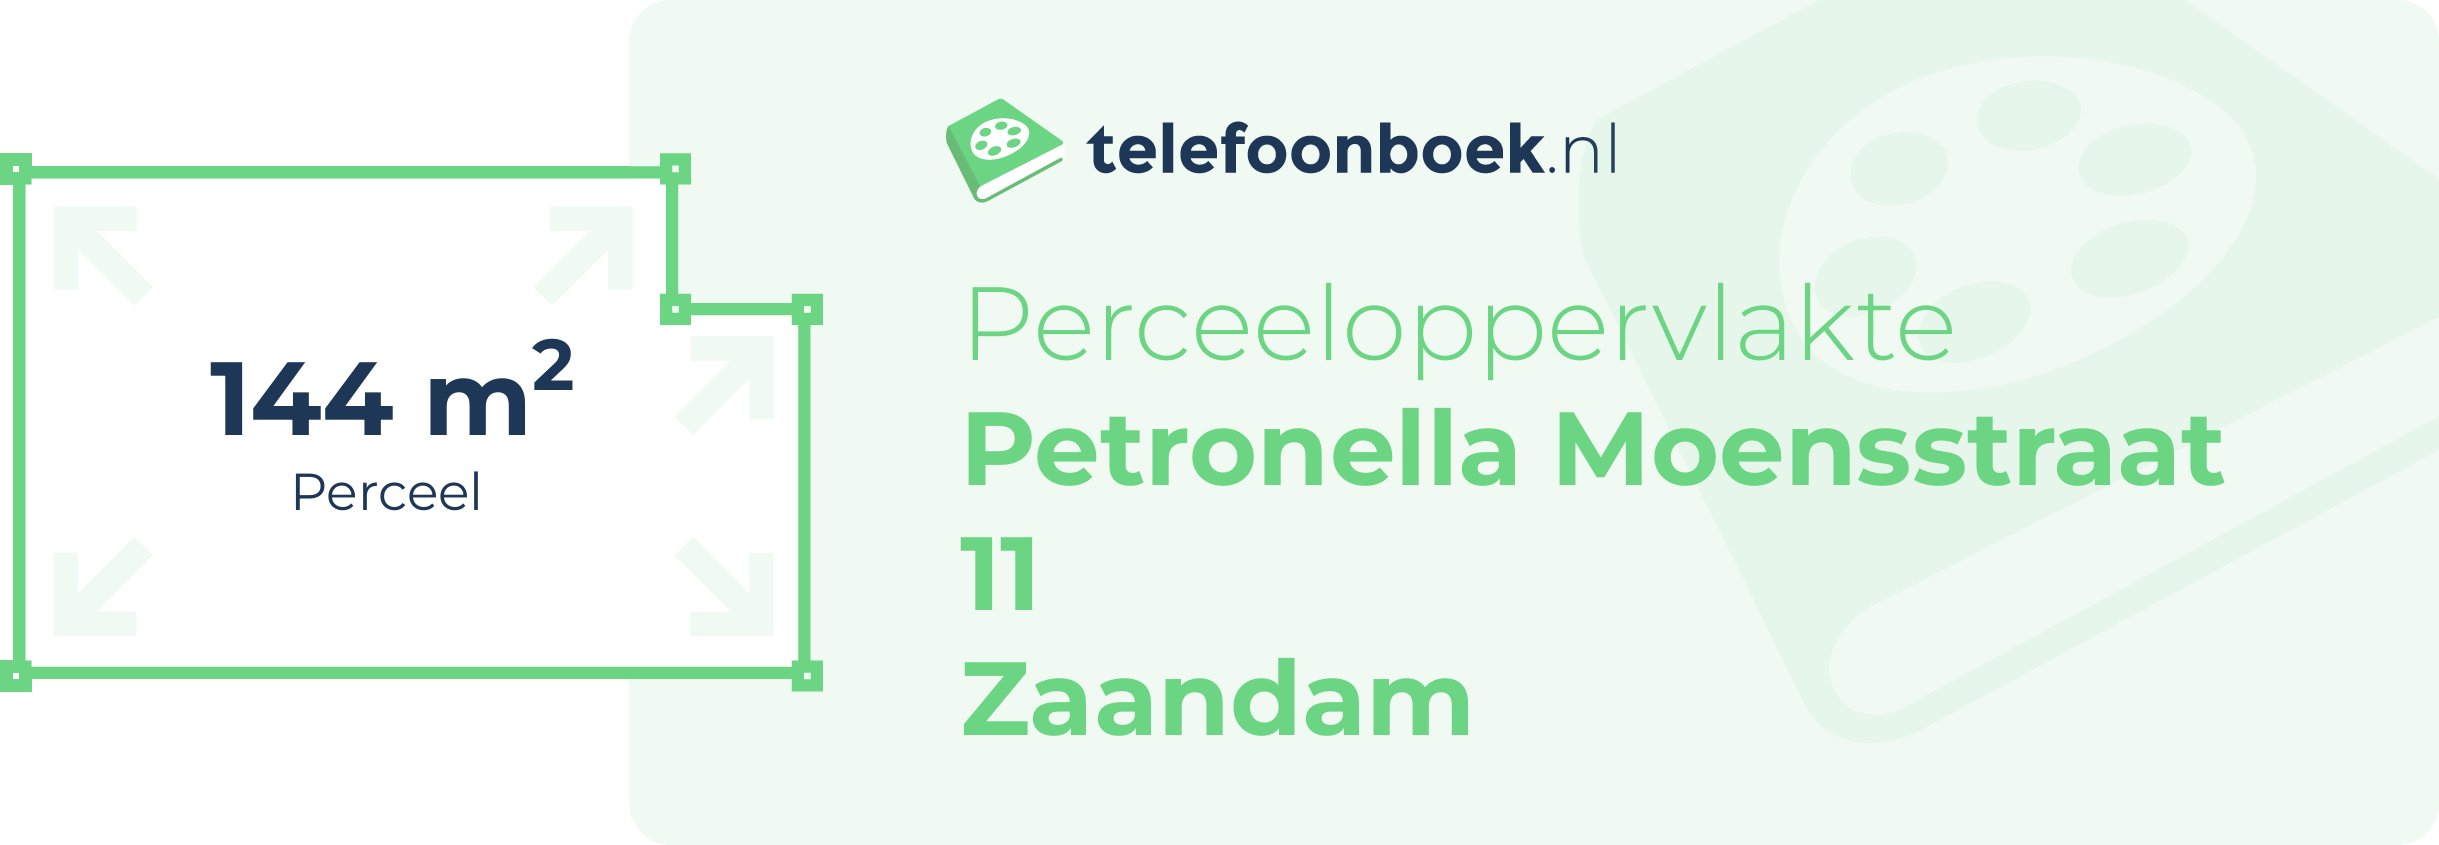 Perceeloppervlakte Petronella Moensstraat 11 Zaandam